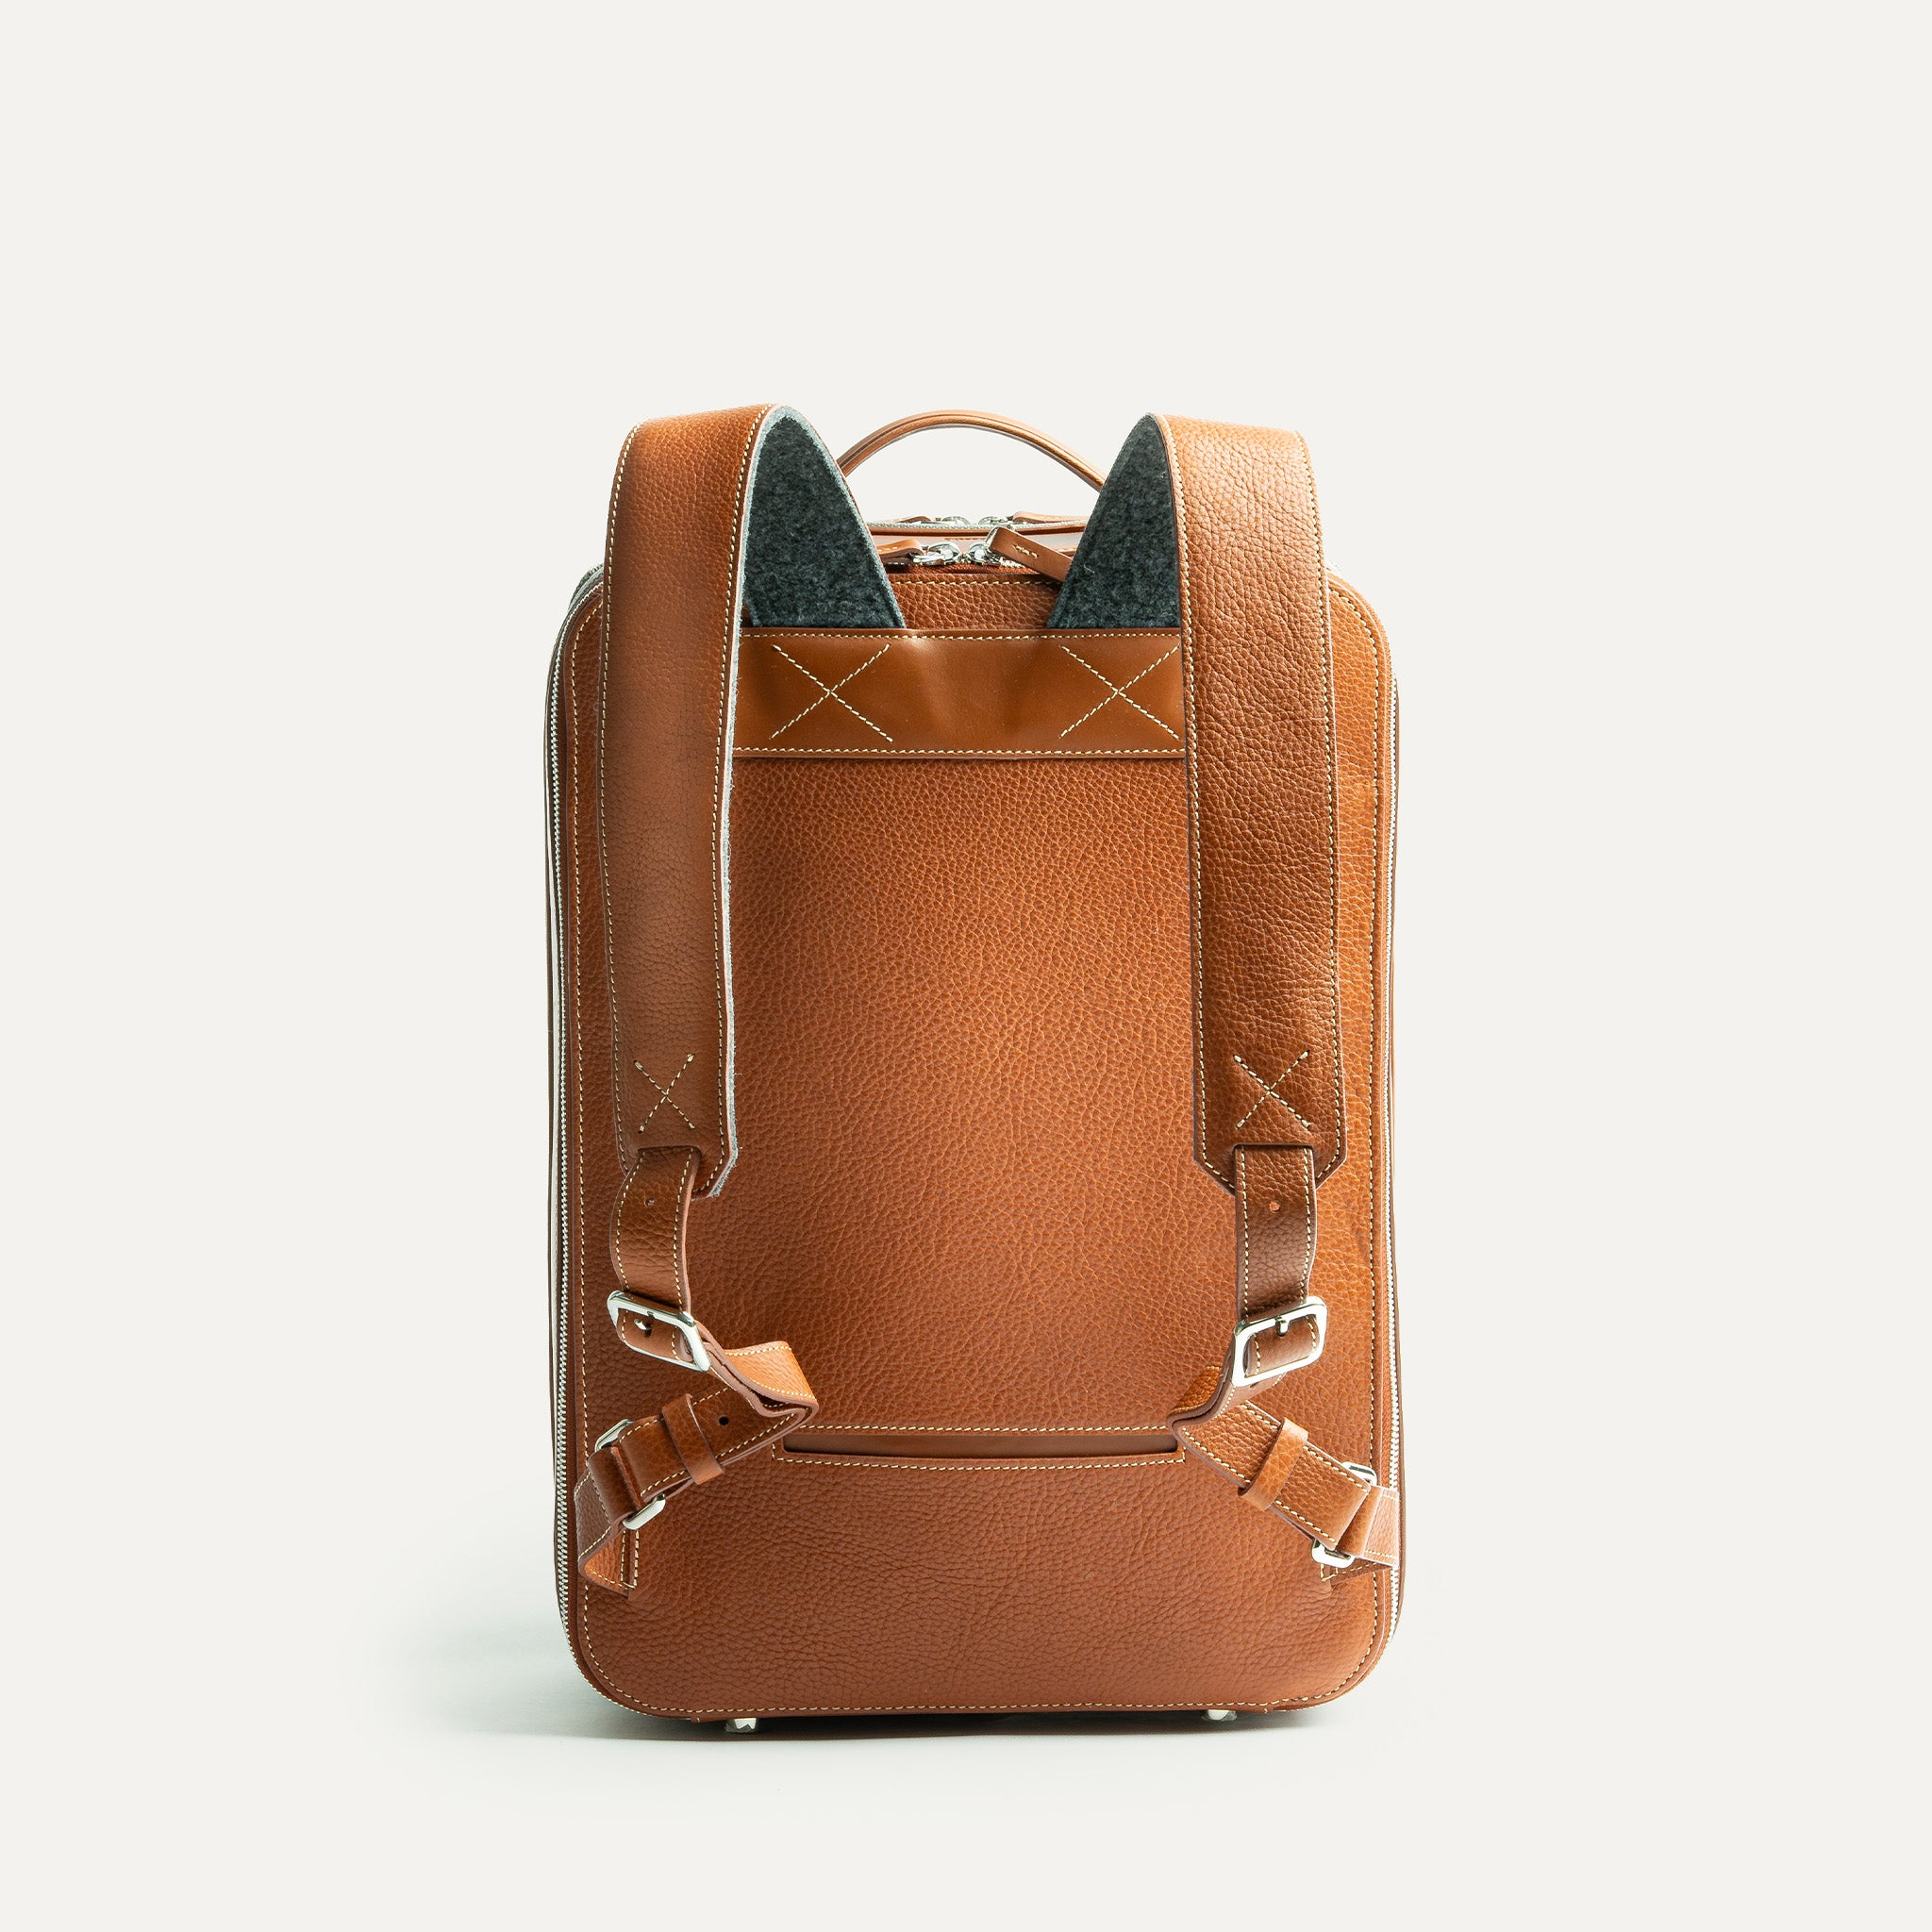 sac à dos homme avec anses ajustables en cuir à l'extérieur et en feutrine 100% recyclée à l'intérieur pour un meilleur confort au quotidien